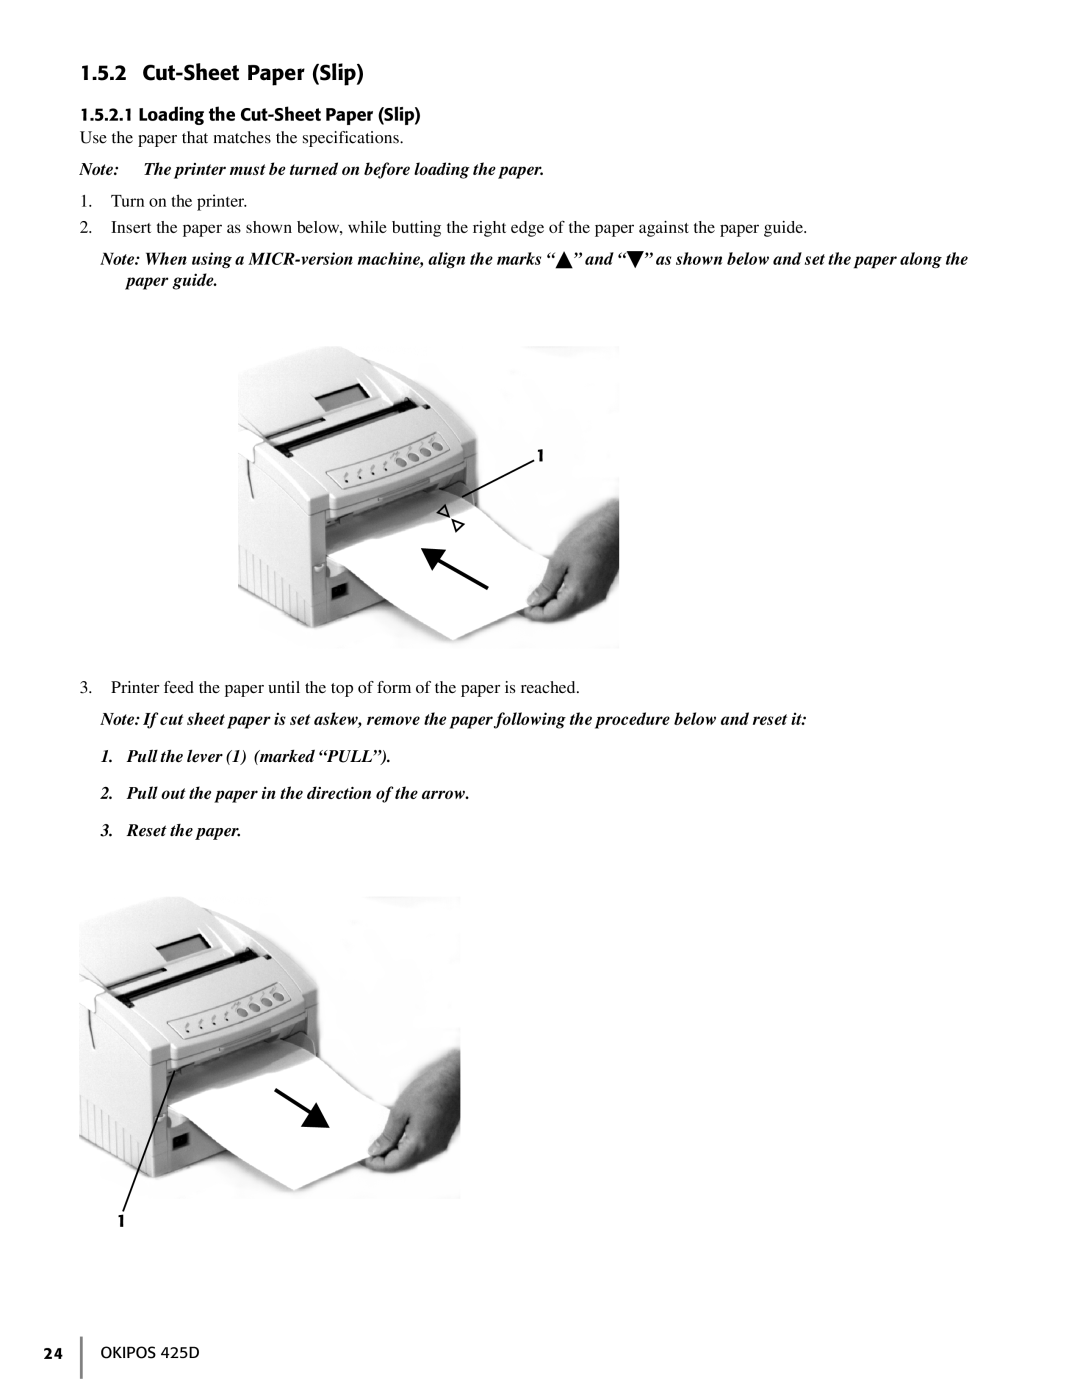 Oki 425D manual Cut-Sheet Paper Slip 